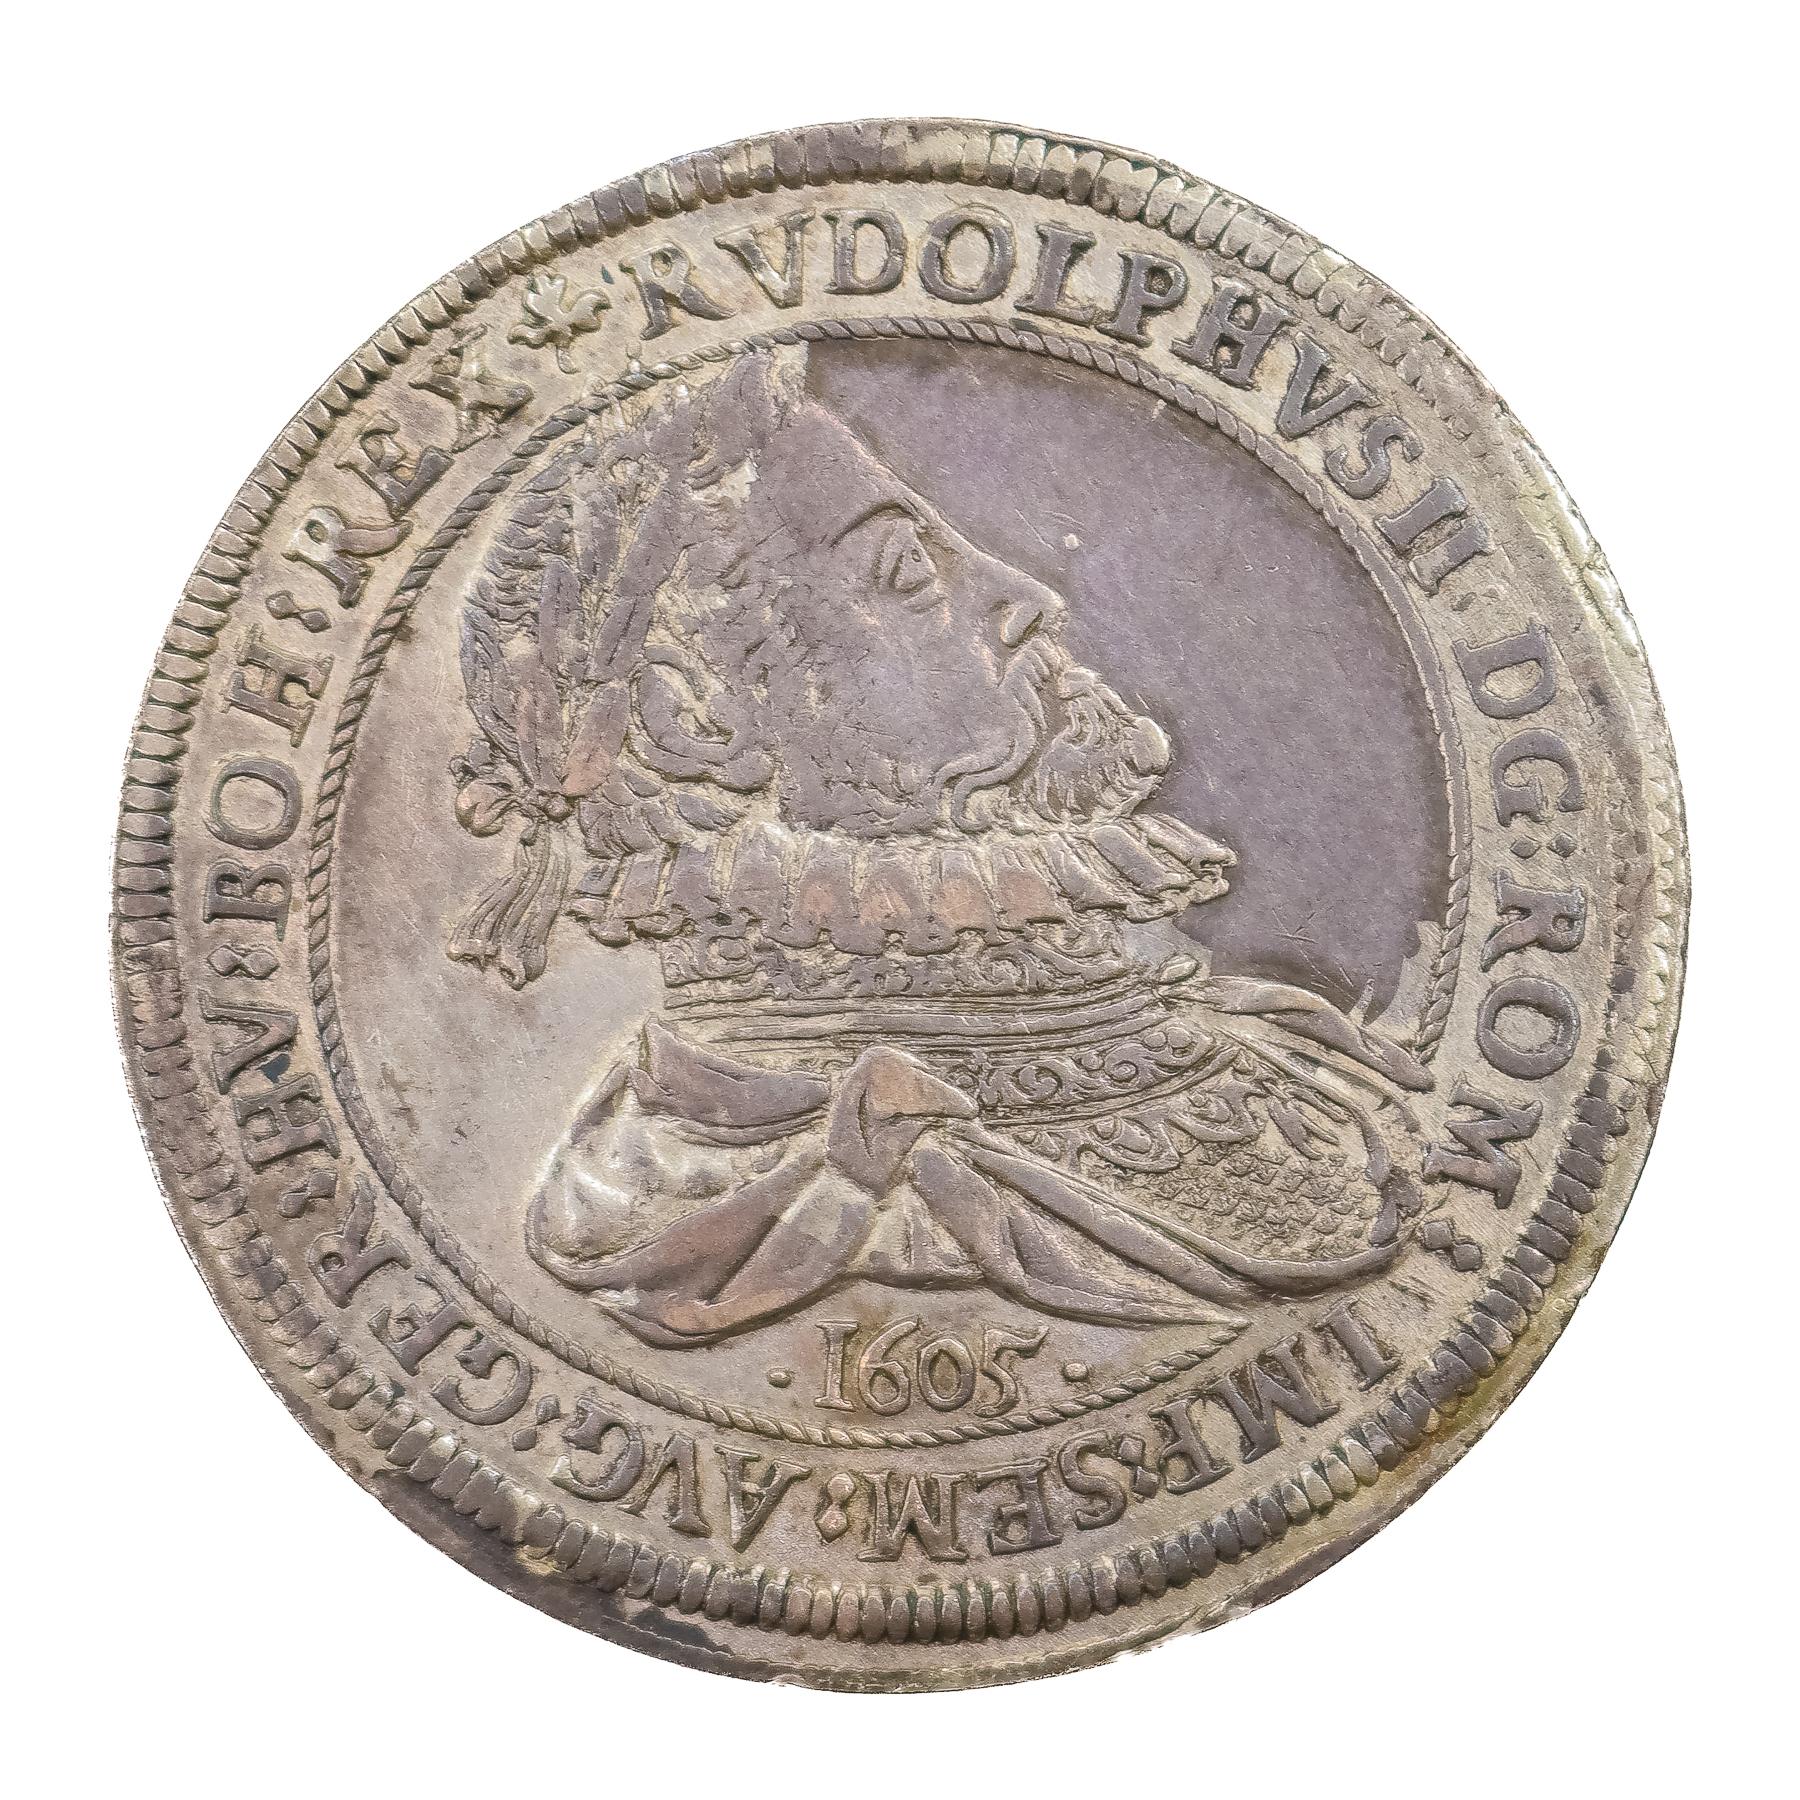 MONEDA DE RUDOLF II DE 1605